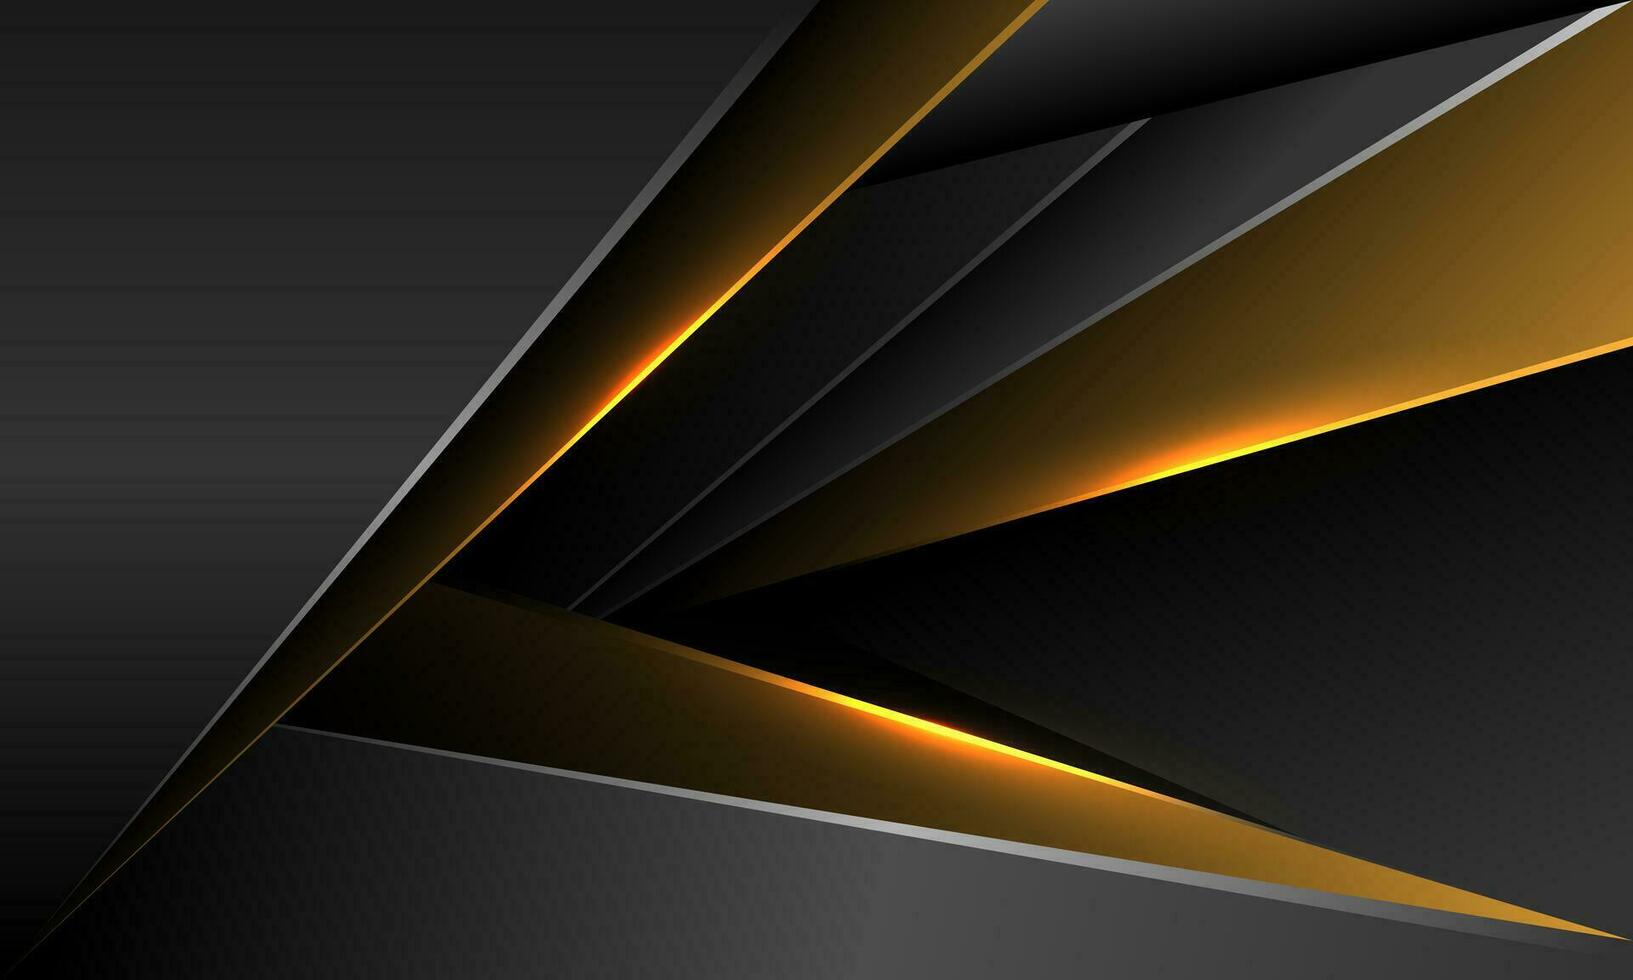 abstrakt grau metallisch Gold geometrisch Überlappung Pfeil Richtung Design modern Luxus futuristisch Hintergrund Vektor